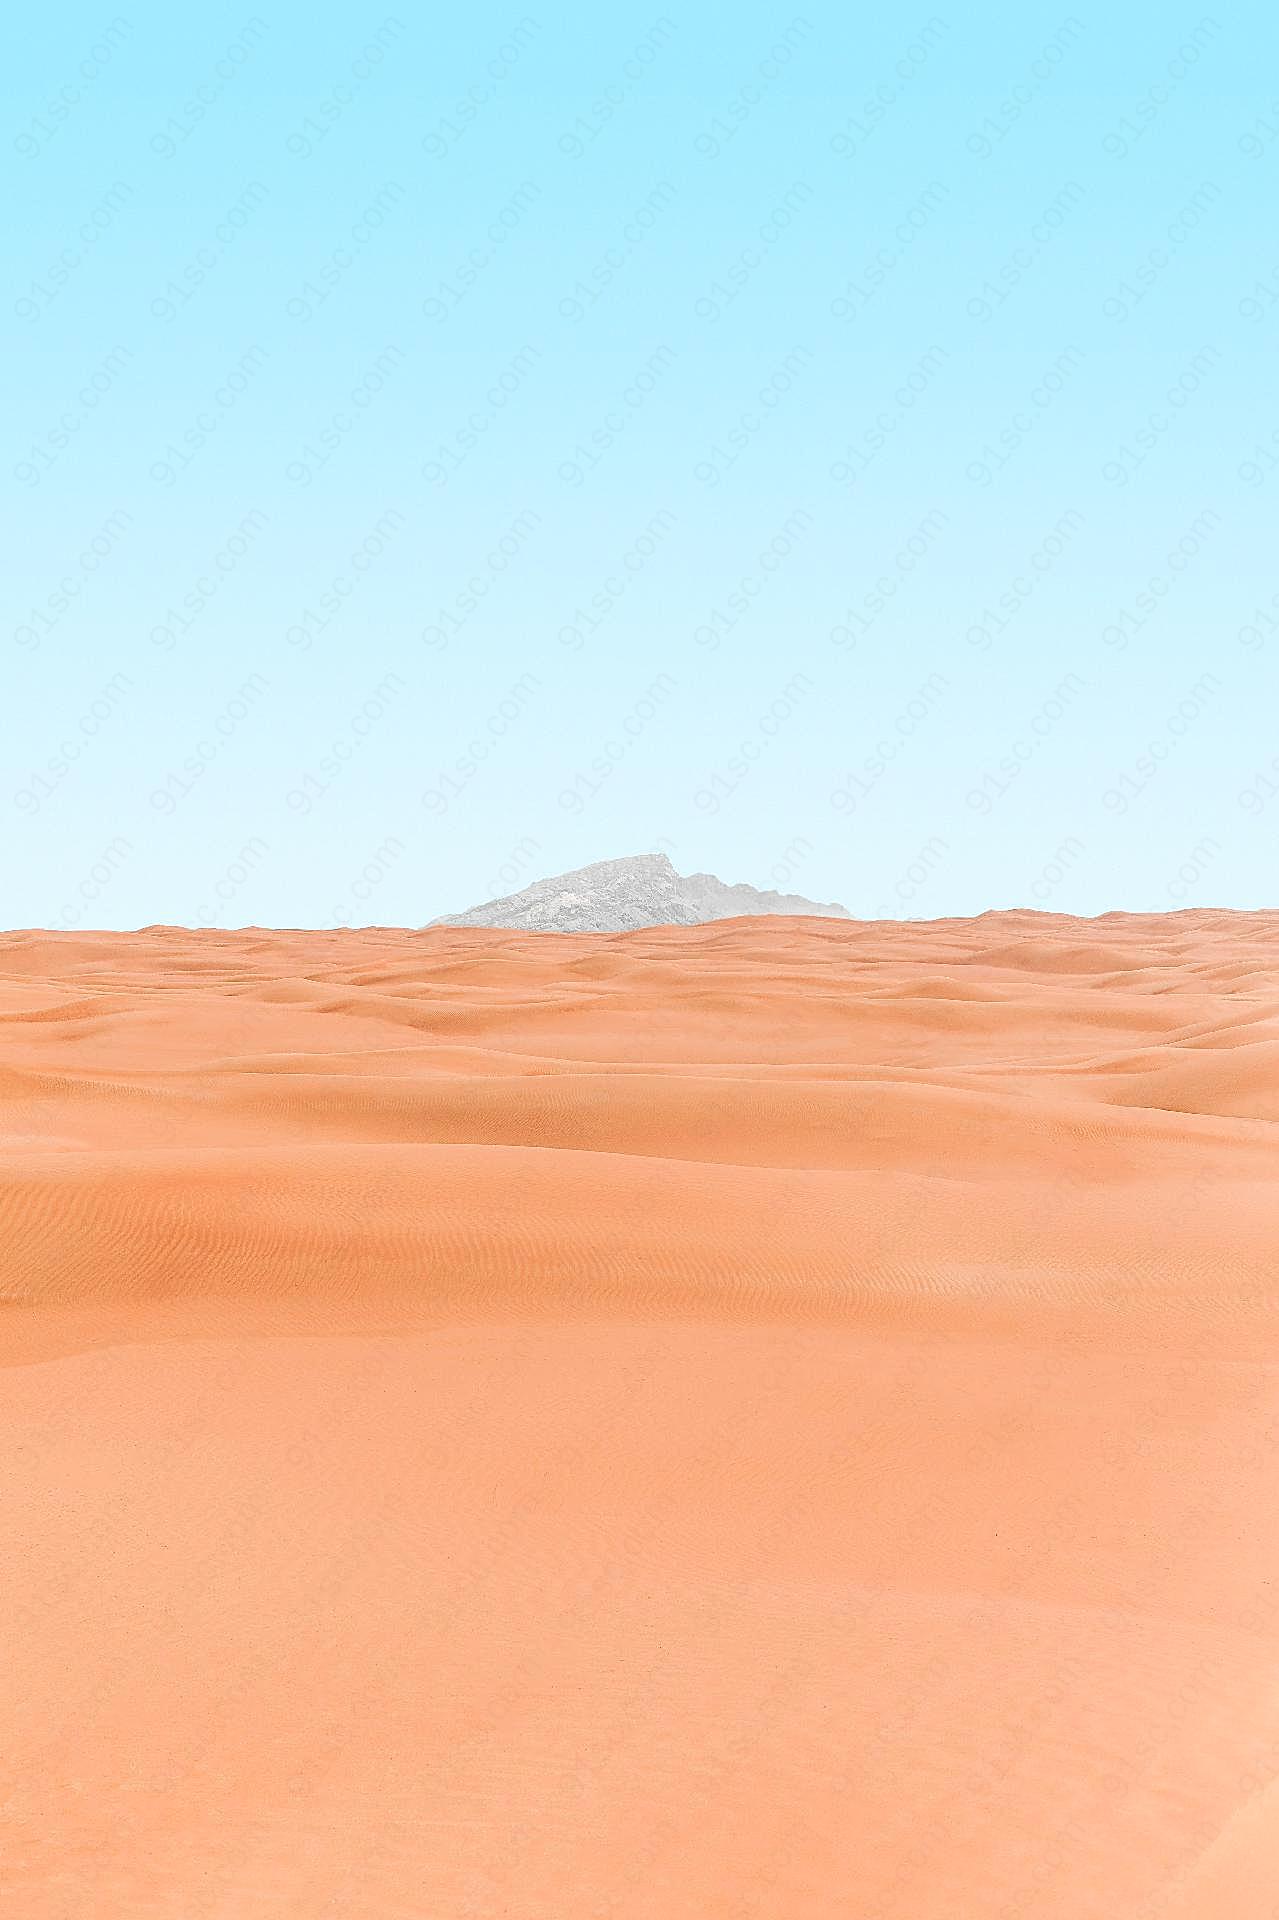 自然风光图片沙漠